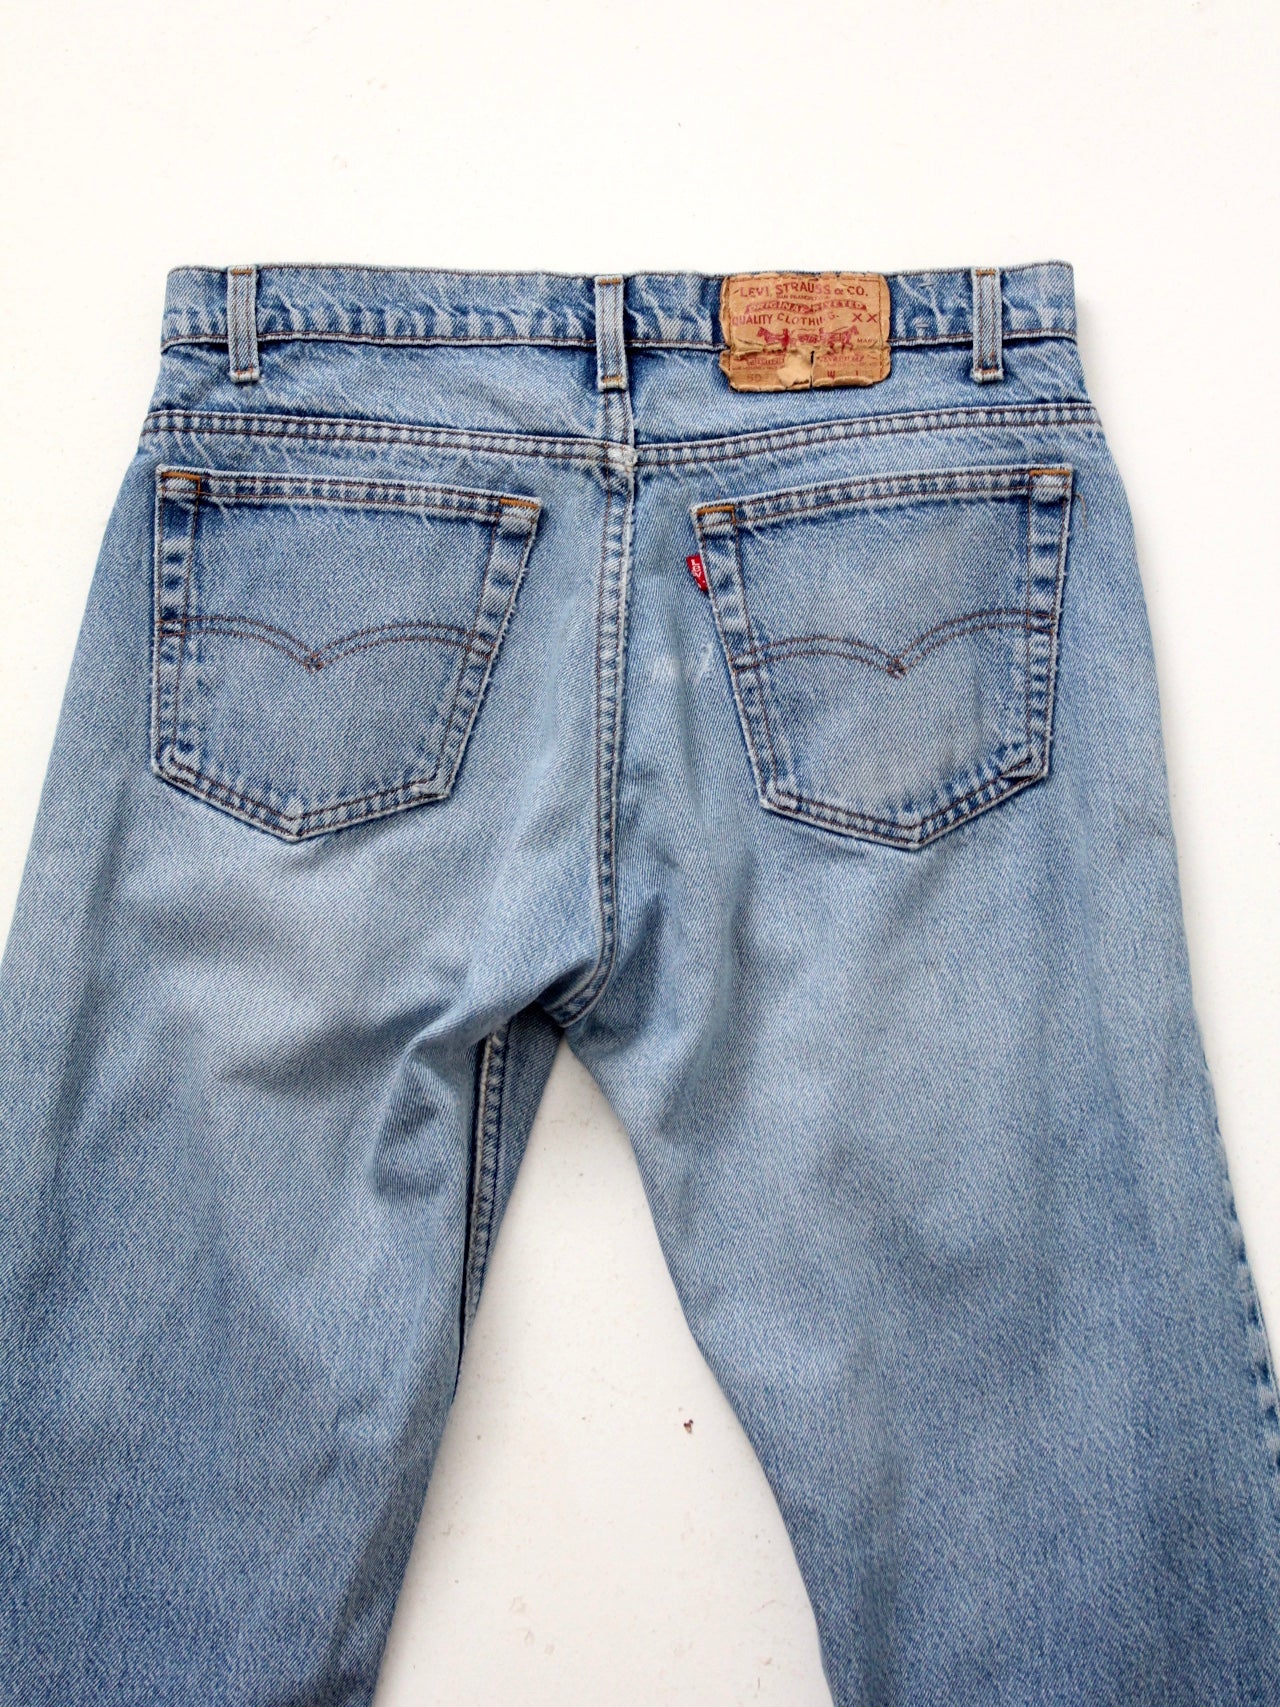 vintage Levis 505 jeans, 34 x 32